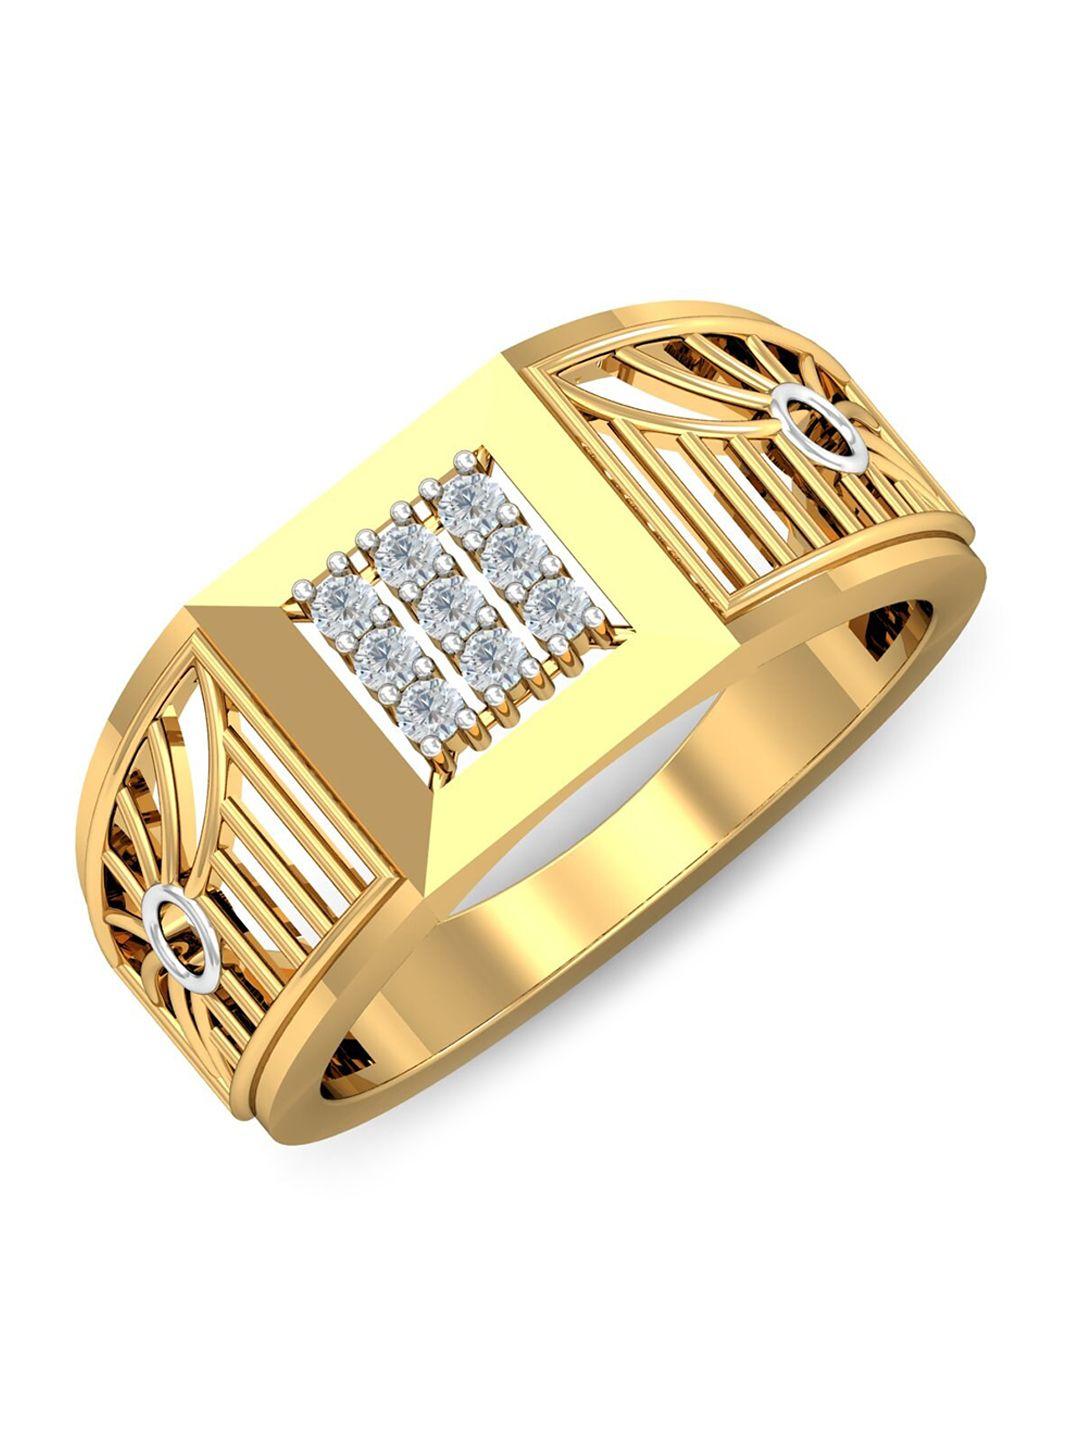 kuberbox men 18kt gold bruce diamond-studded ring -4.82 gm